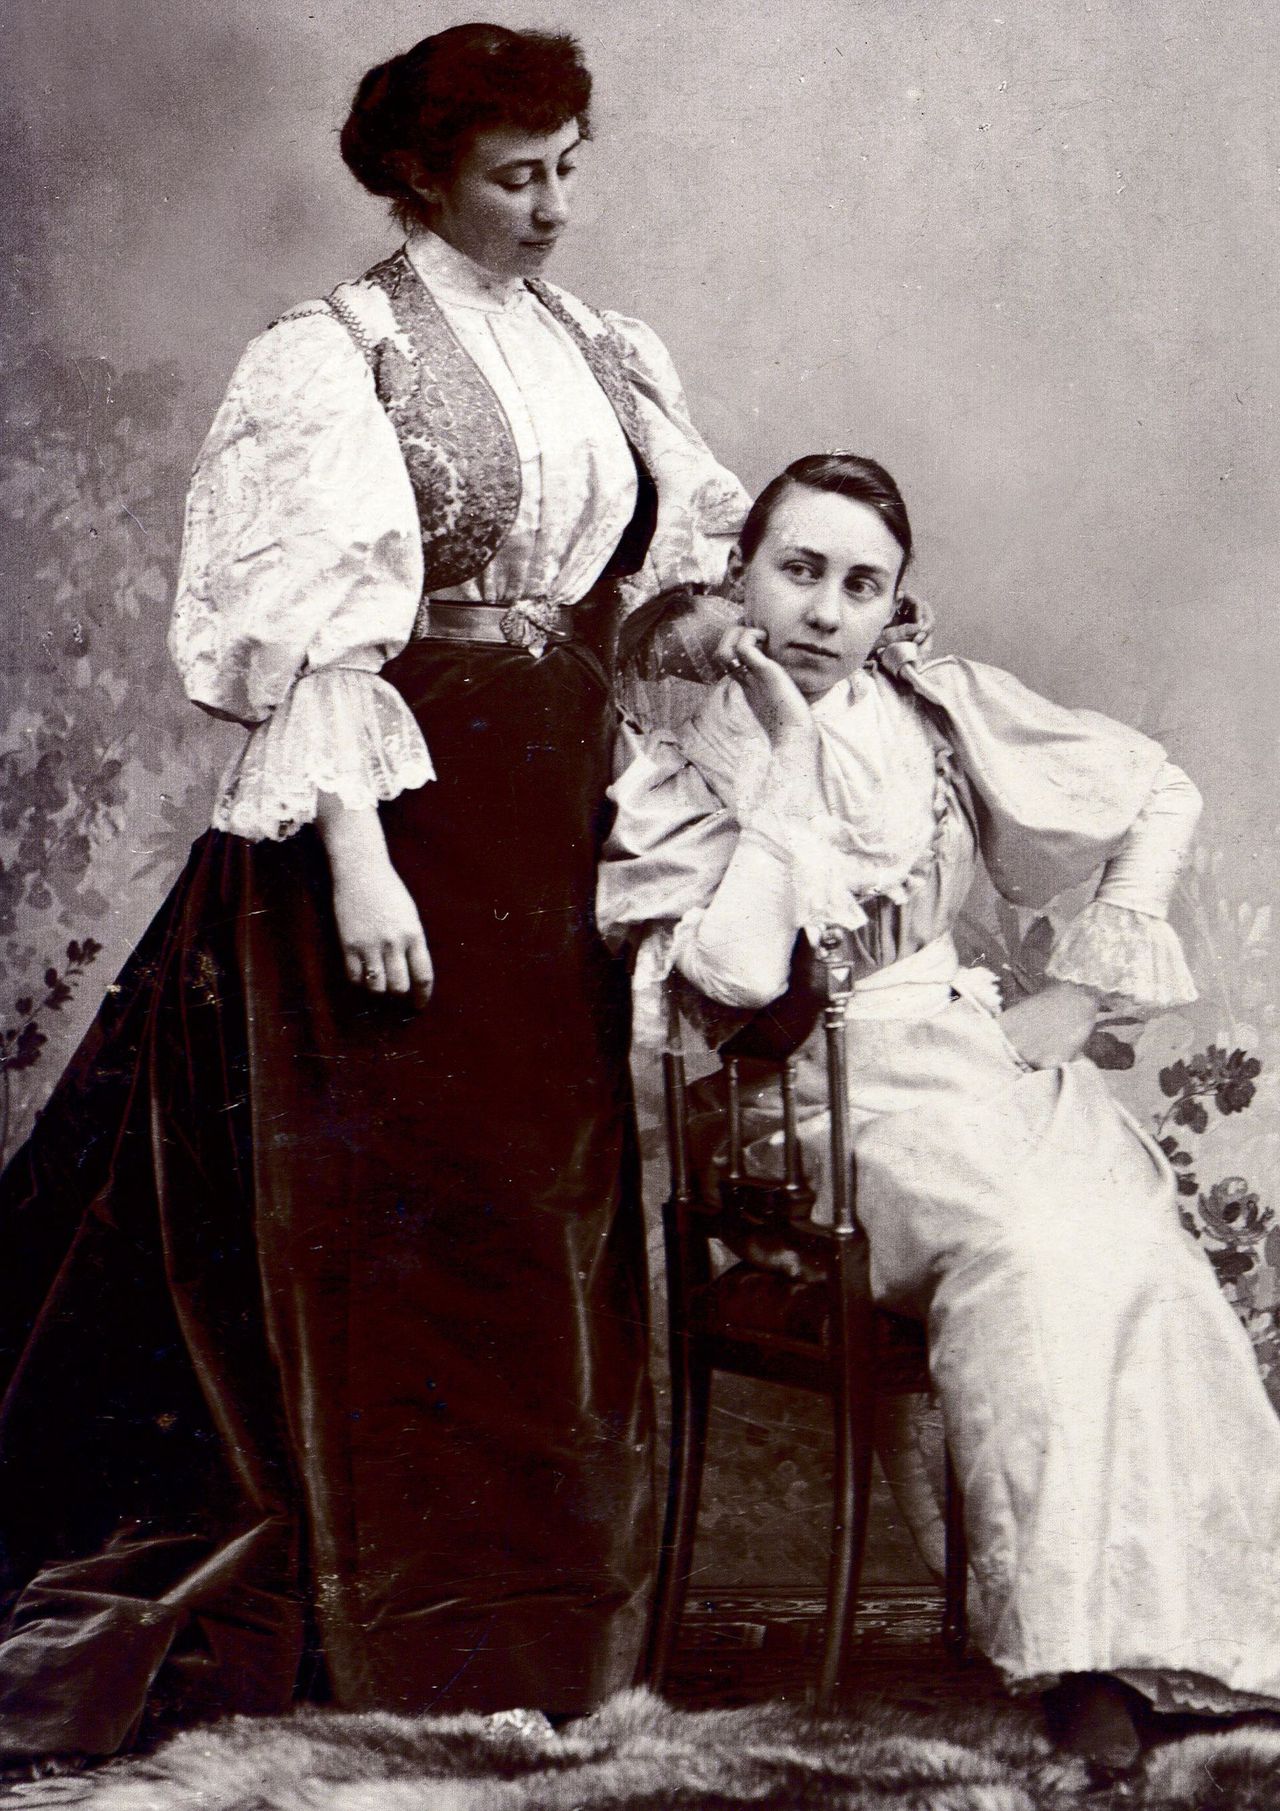 Cécile, uitgedost als Mexicaanse, met op de stoel haar zuster Elsa, januari 1894.